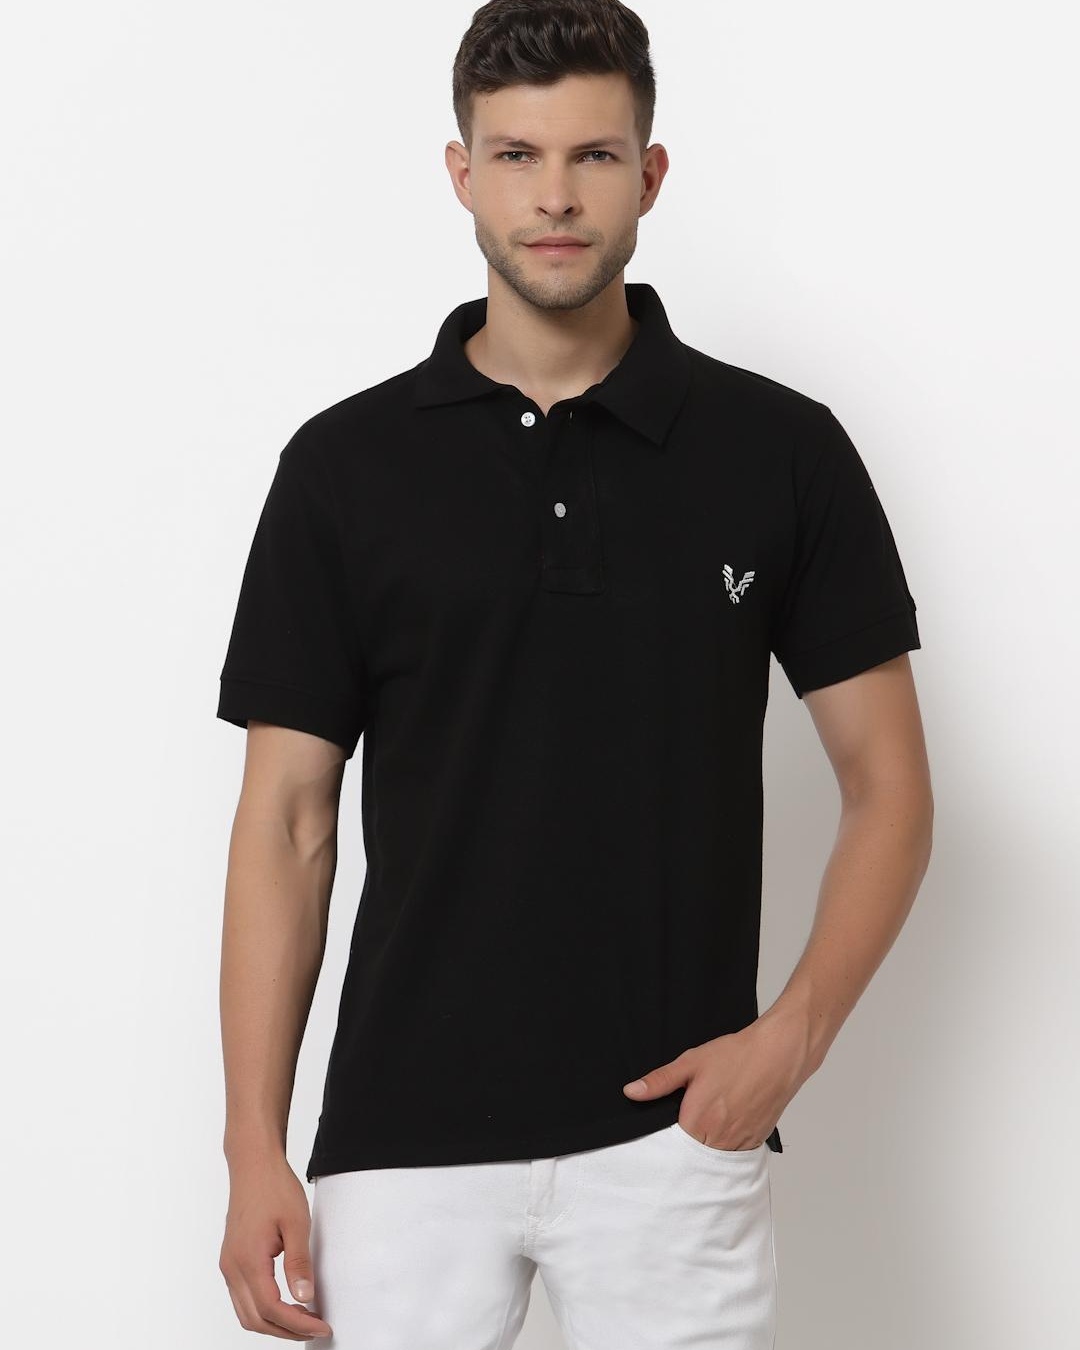 Buy Men's Black Polo T-shirt for Men Black Online at Bewakoof